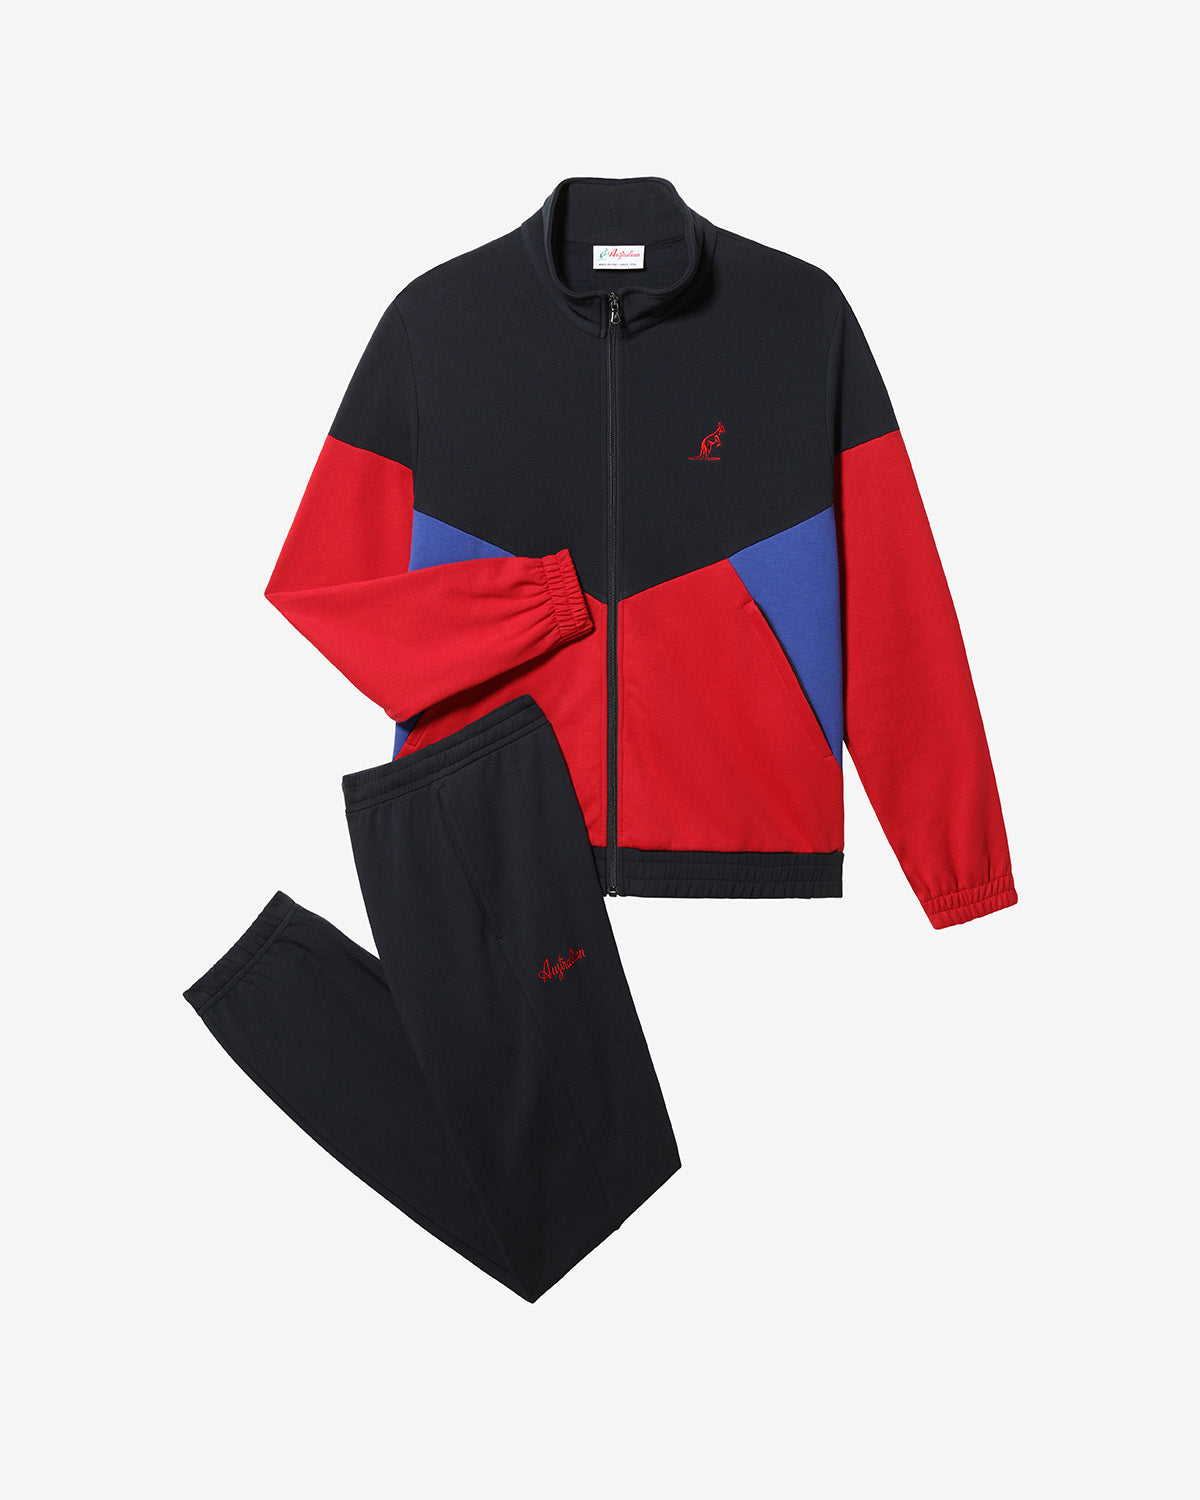 Icon Tracksuit: Australian Sportswear